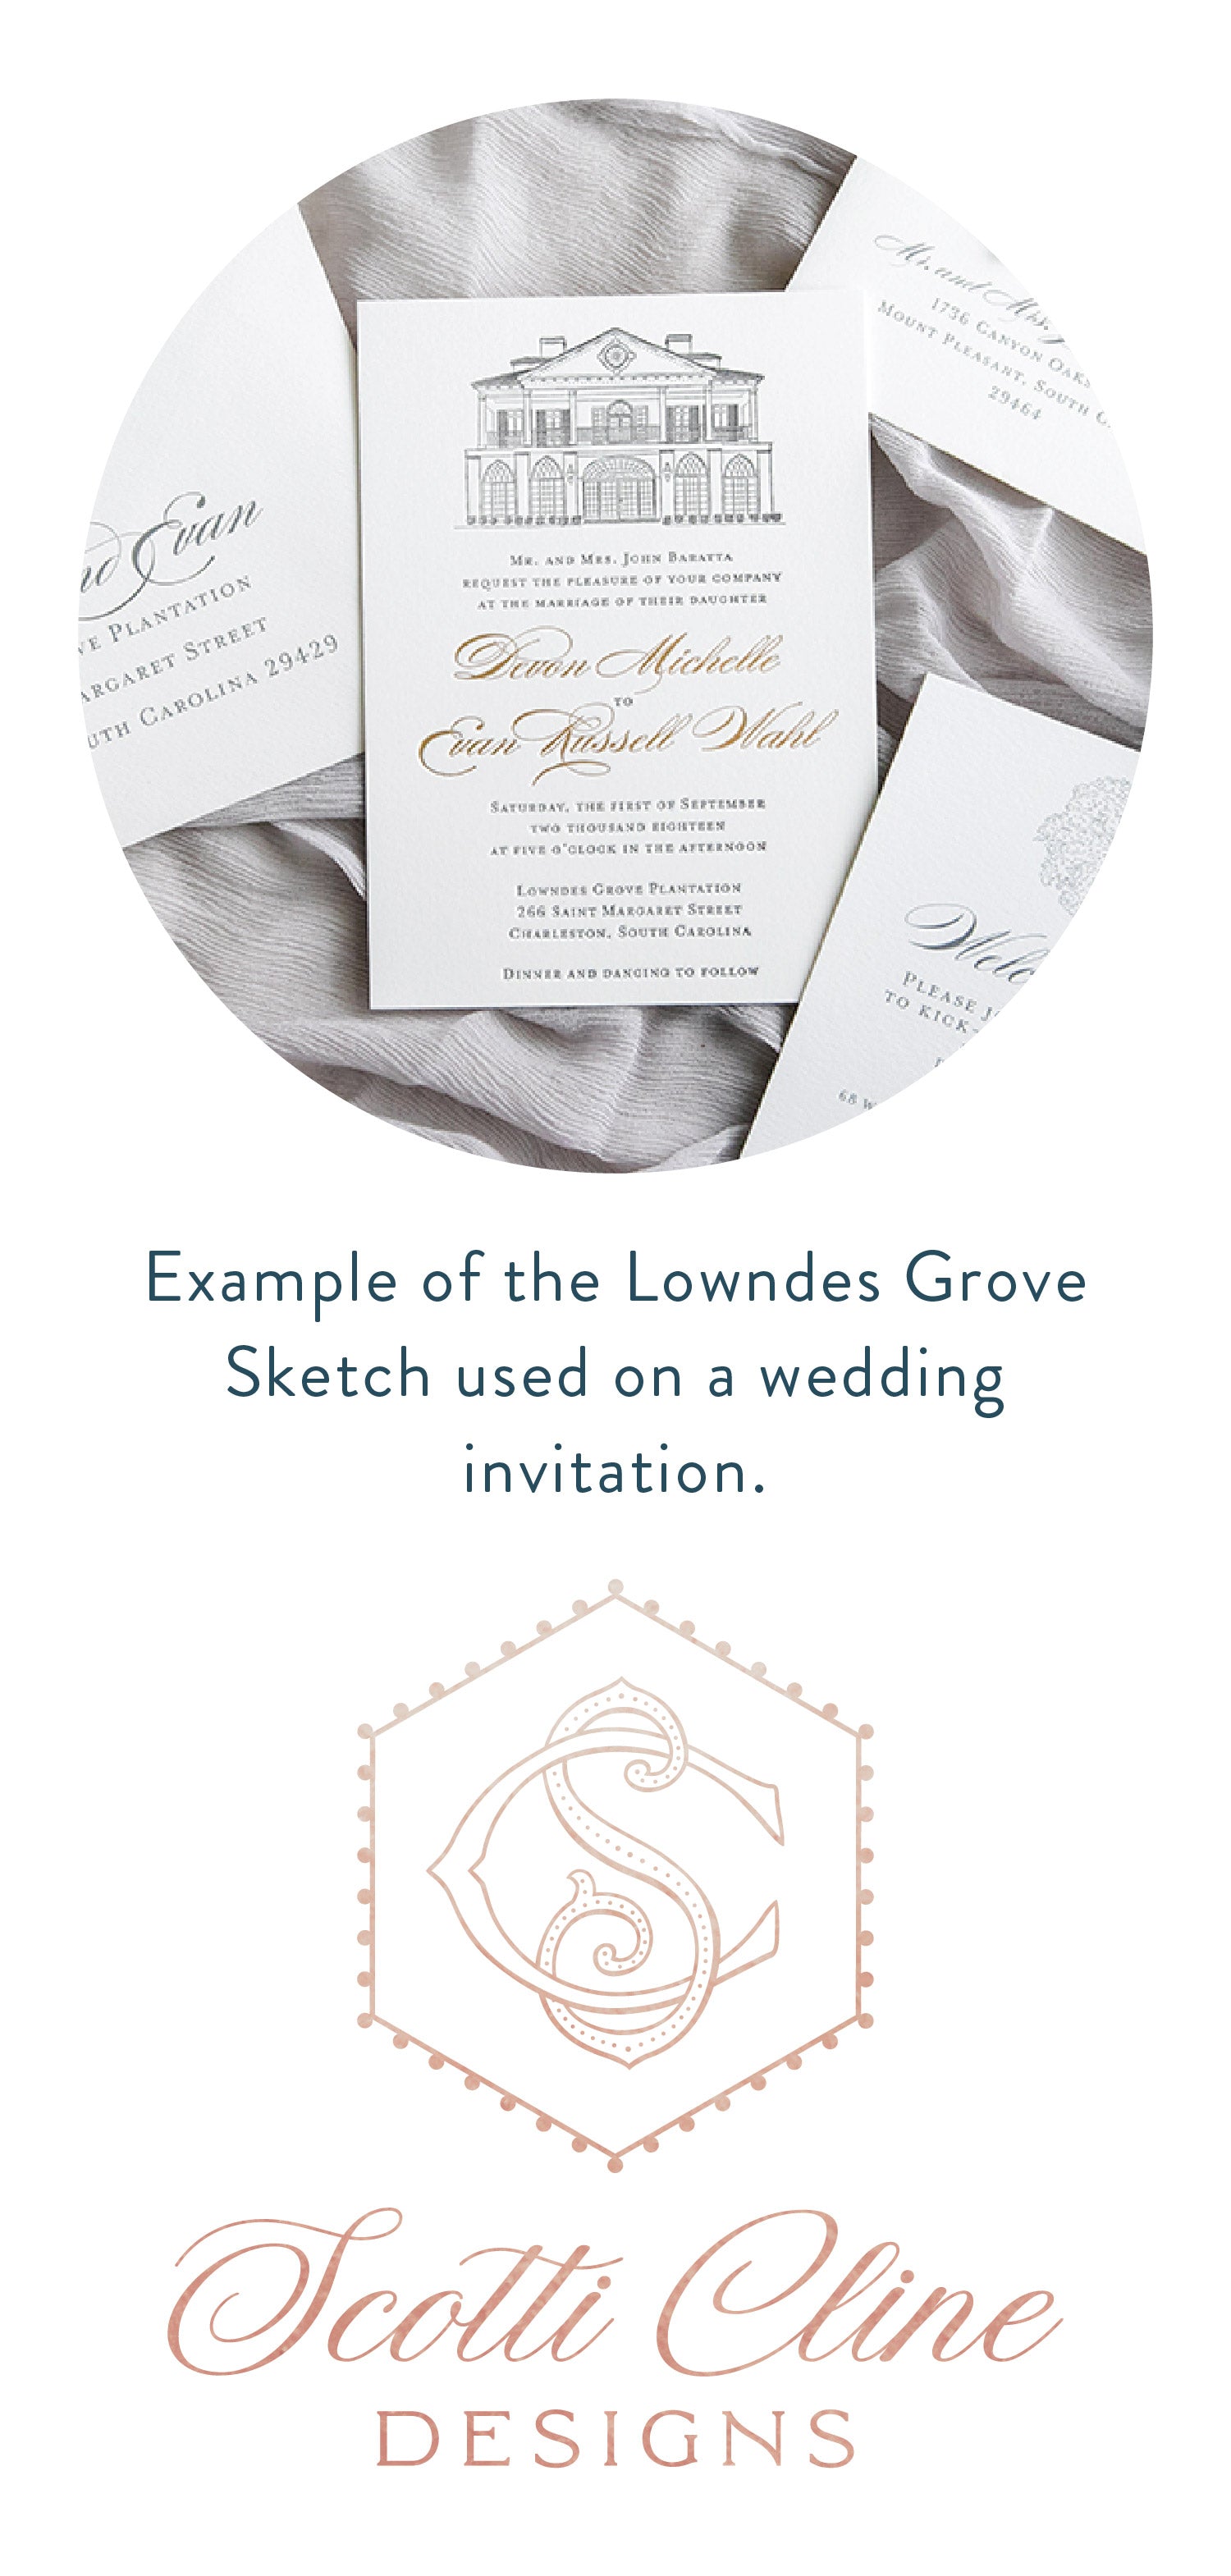 Letterpress Lowndes Grove Invitation - Scotti Cline Designs